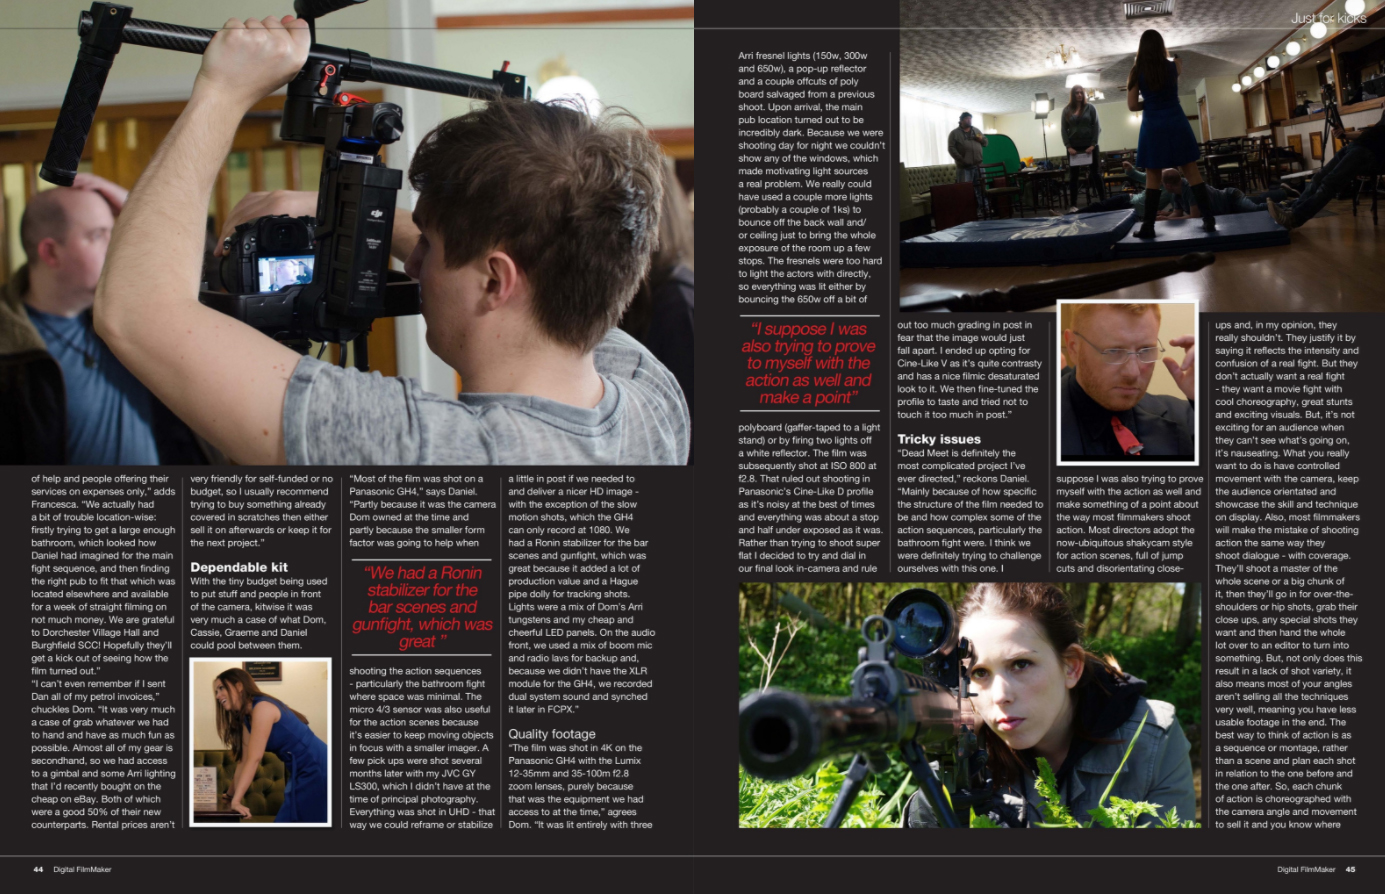 Digital Filmmaker Magazine, edition 49